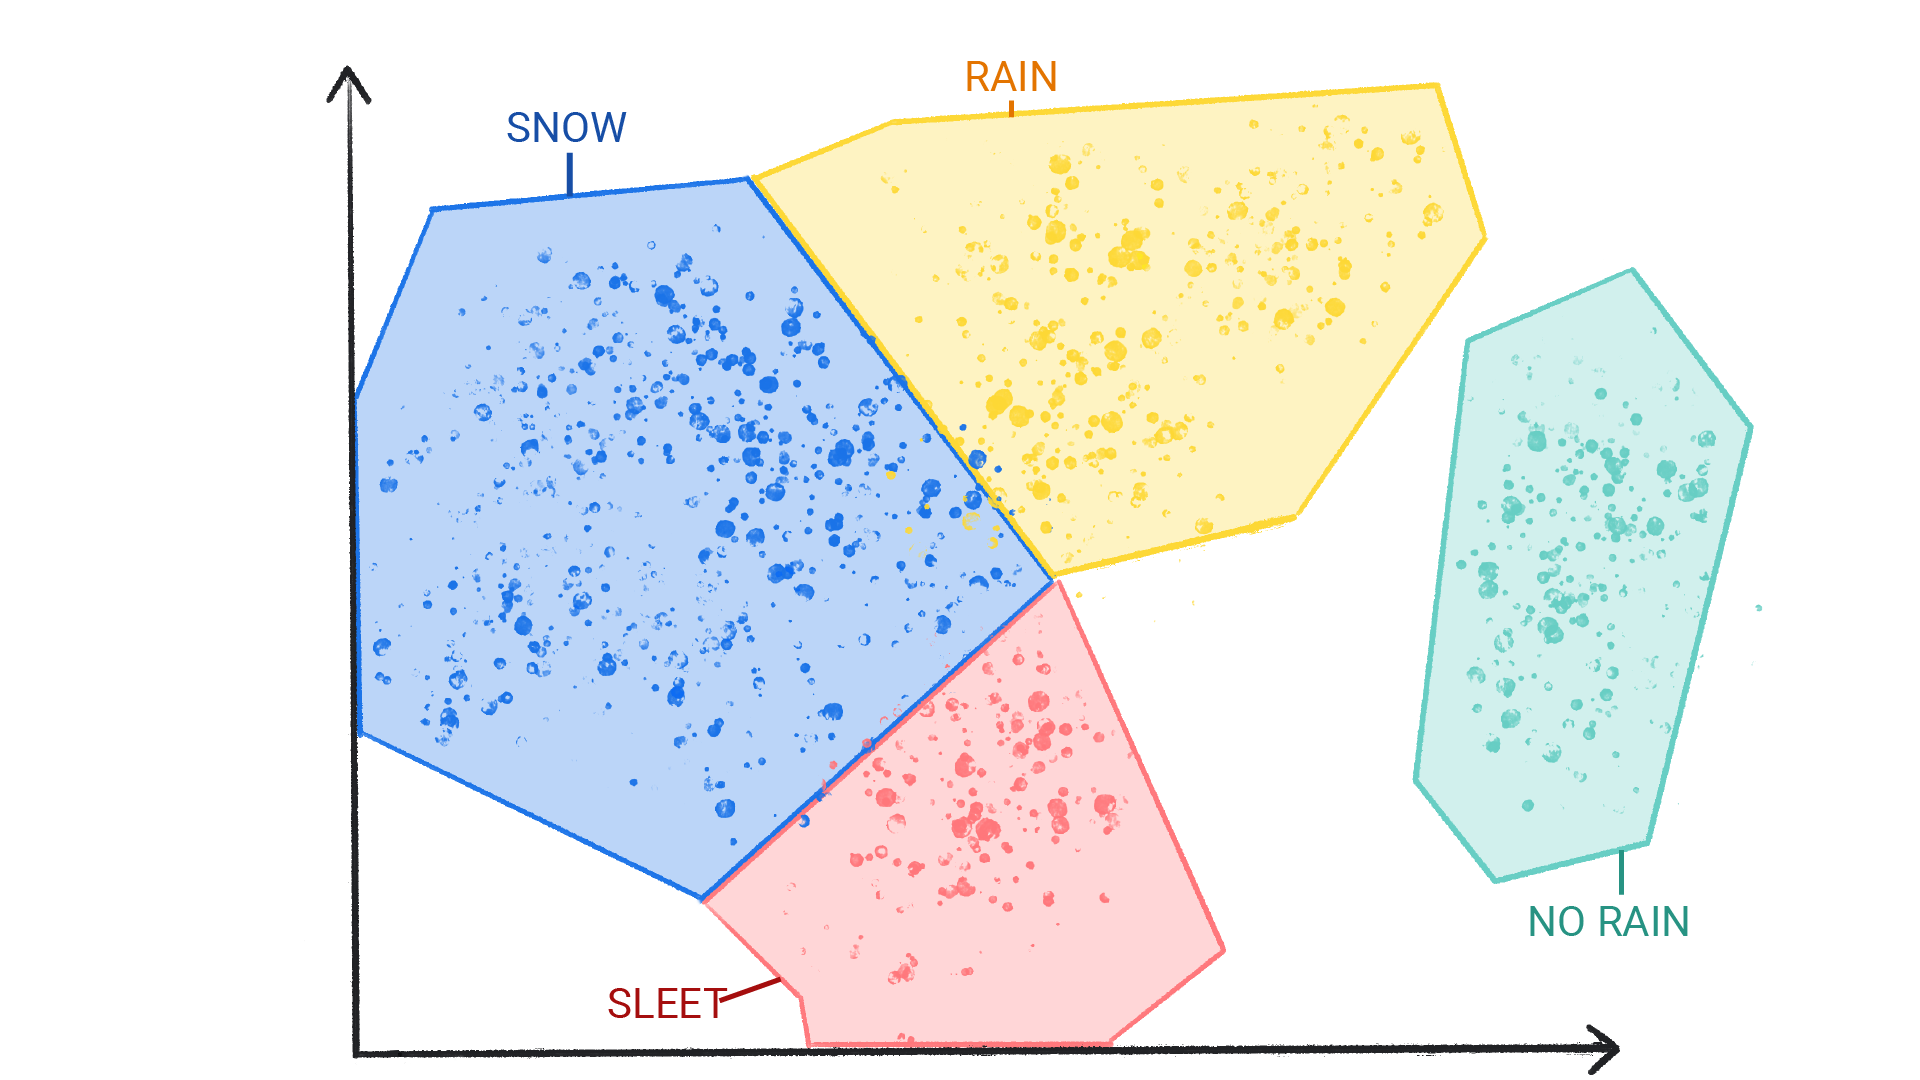 Una imagen que muestra puntos de colores en grupos etiquetados como nieve, lluvia, granizo y sin lluvia, encerrados con una forma y bordeados entre sí.